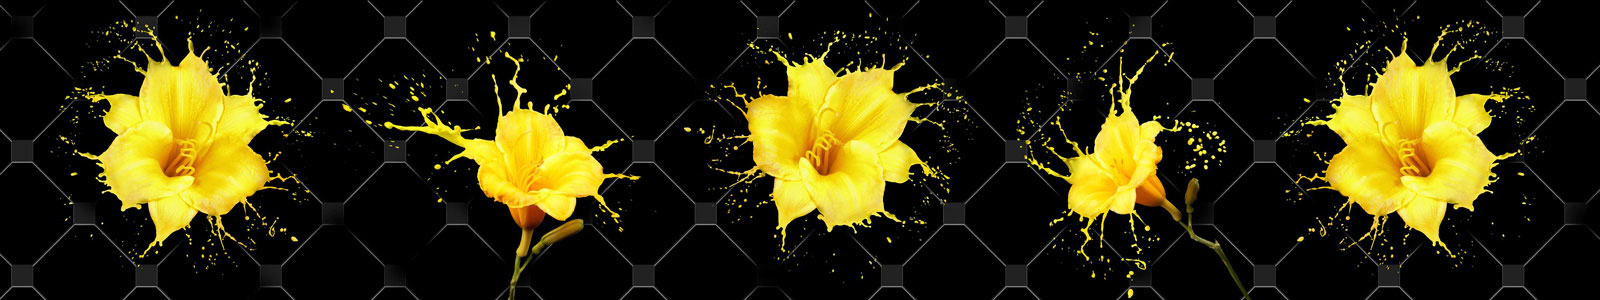 №6247 - Желтые лилии на фоне декоративной плитки